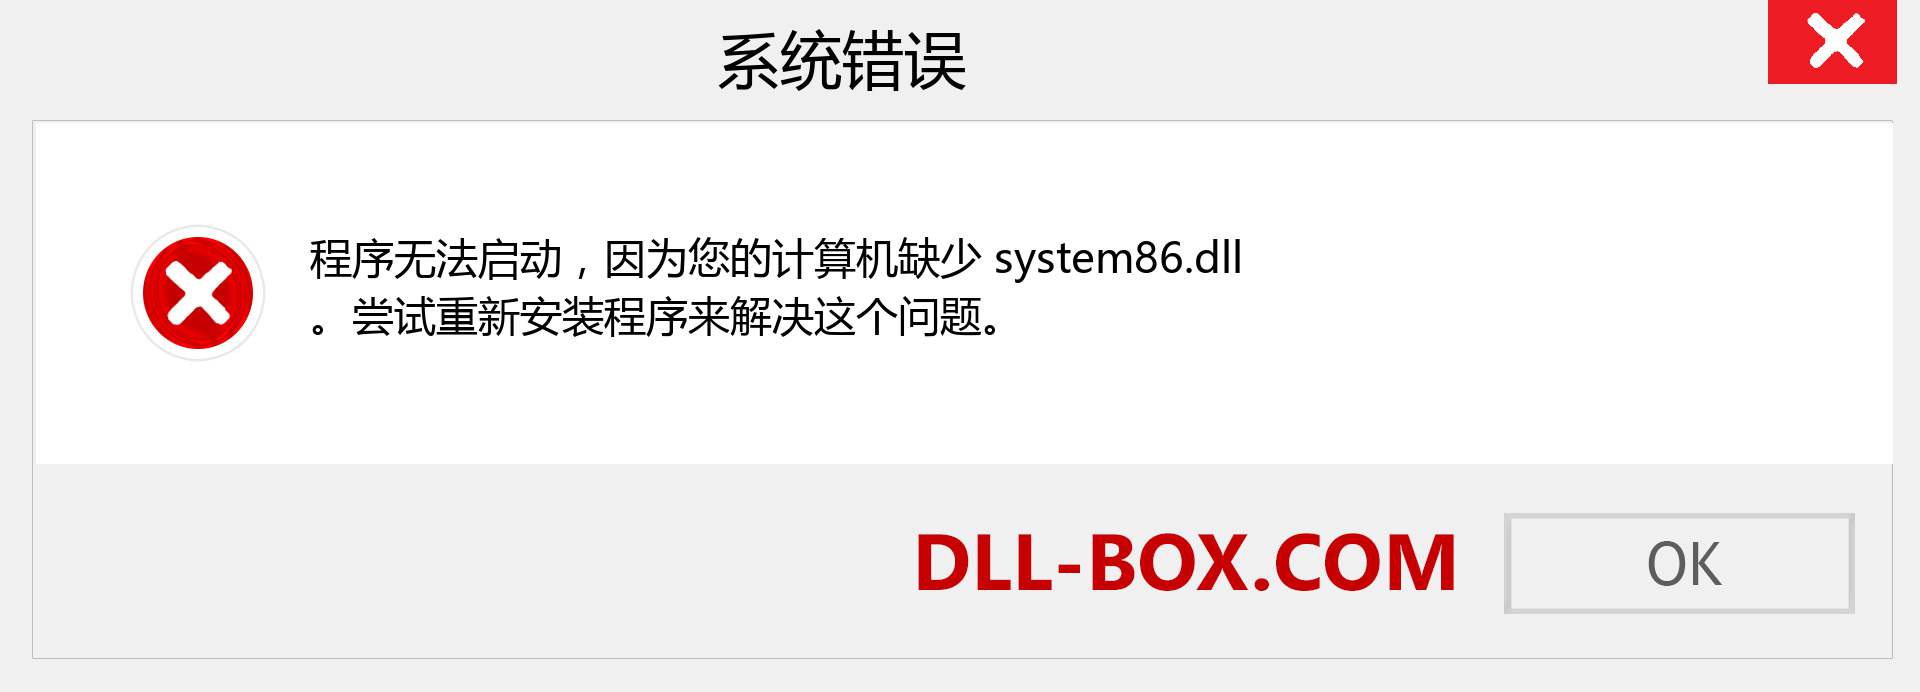 system86.dll 文件丢失？。 适用于 Windows 7、8、10 的下载 - 修复 Windows、照片、图像上的 system86 dll 丢失错误